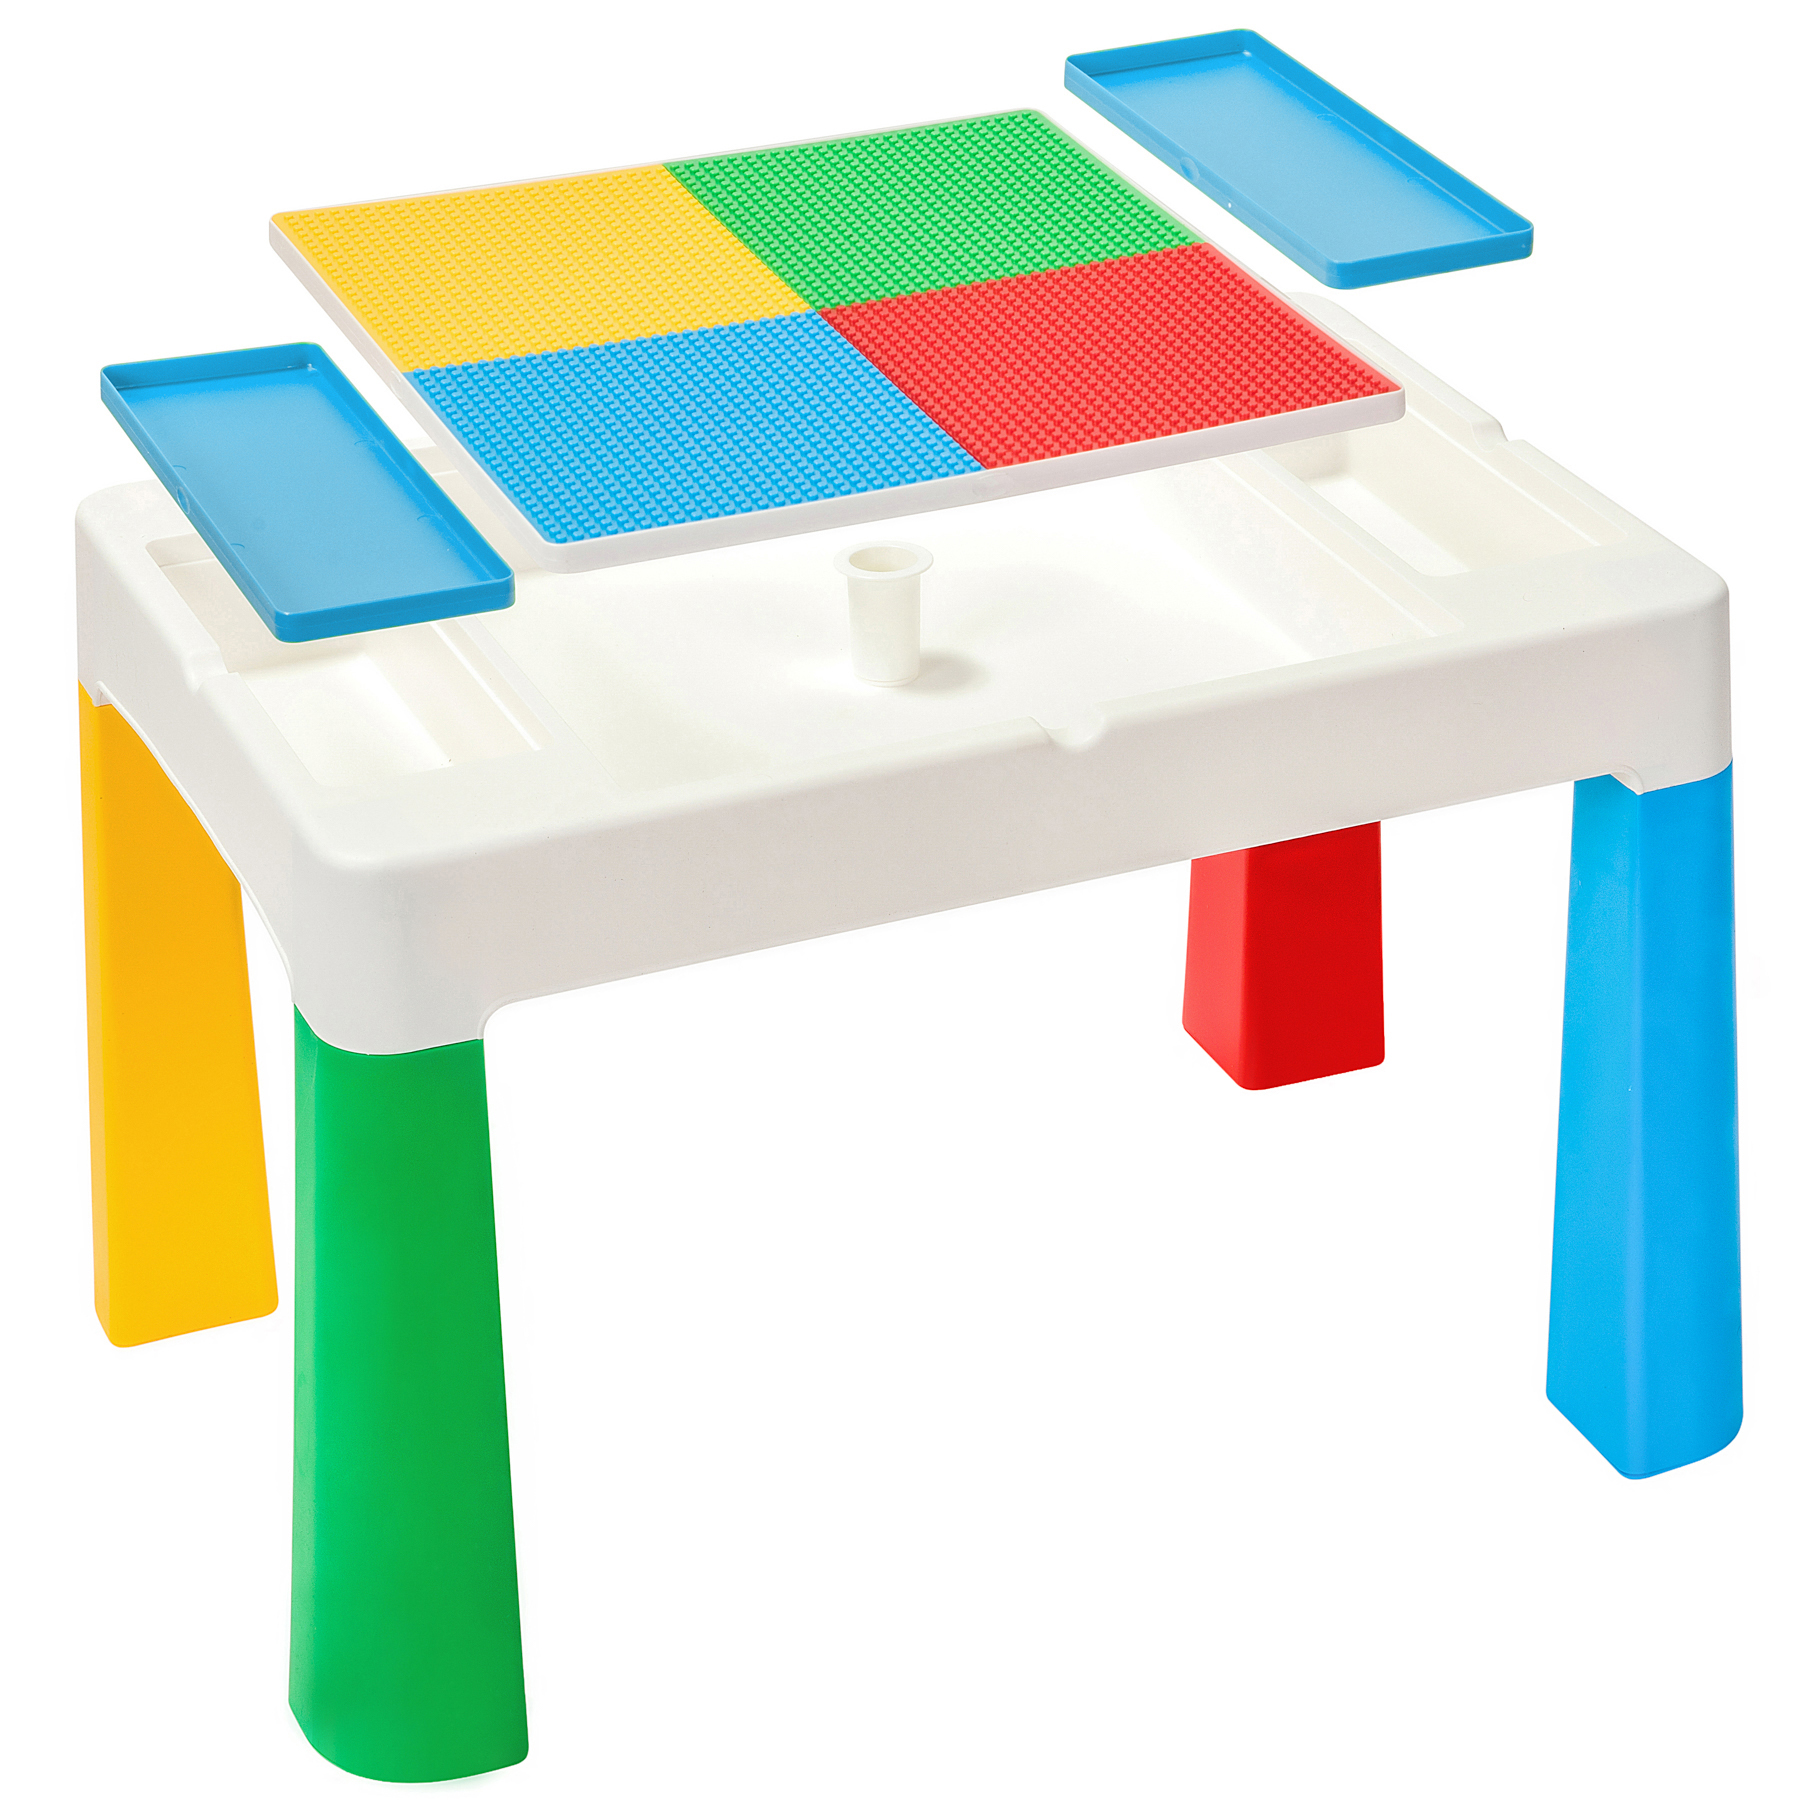 Практична стільниця-трансформер з обіднього столу легко перетворюється в ігровий майданчик або оригінальну панель для конструкторів